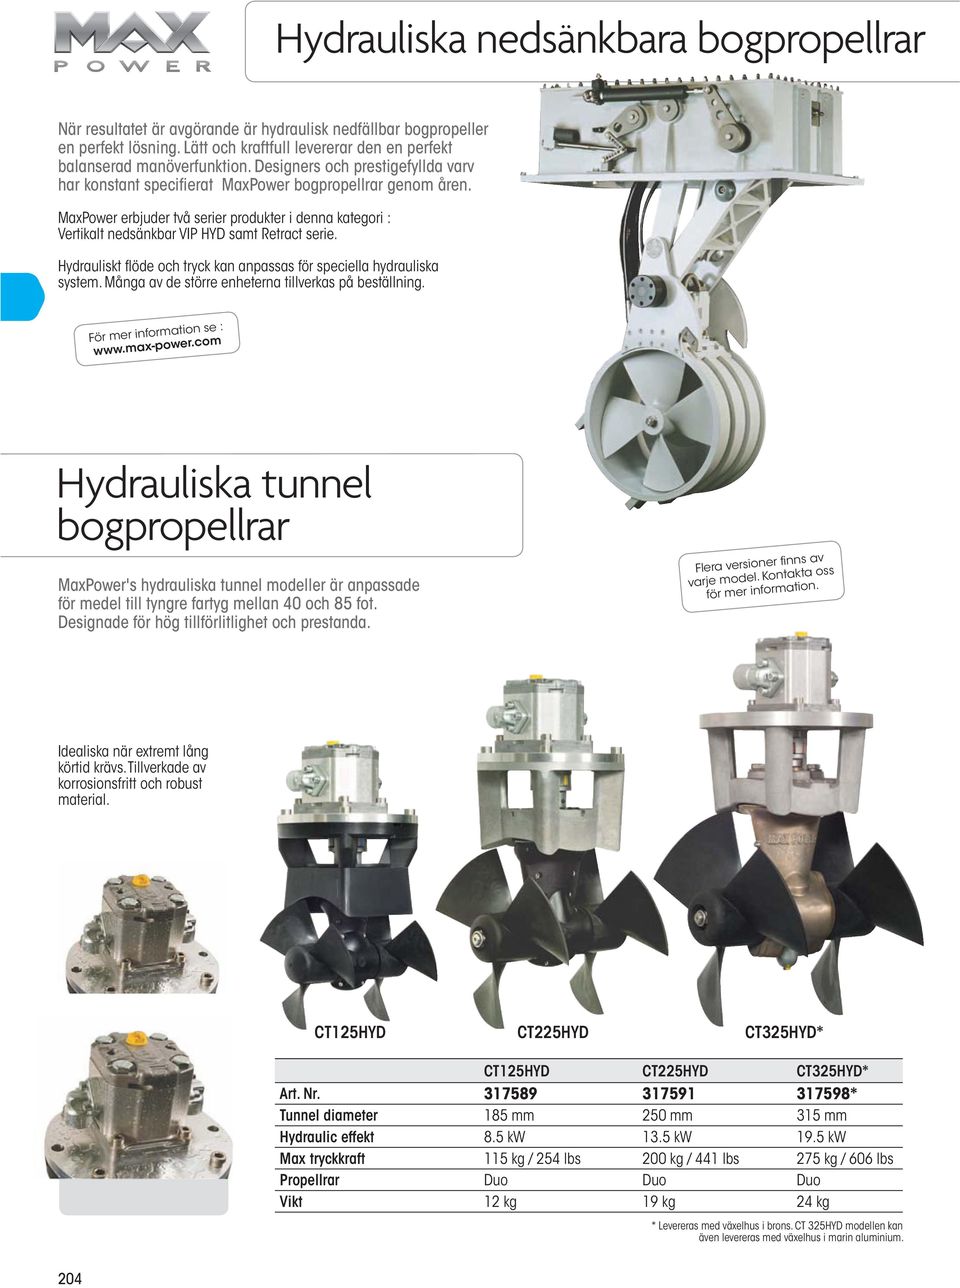 Hydrauliskt flöde och tryck kan anpassas för speciella hydrauliska system. Många av de större enheterna tillverkas på beställning. För mer information se : www.max-power.